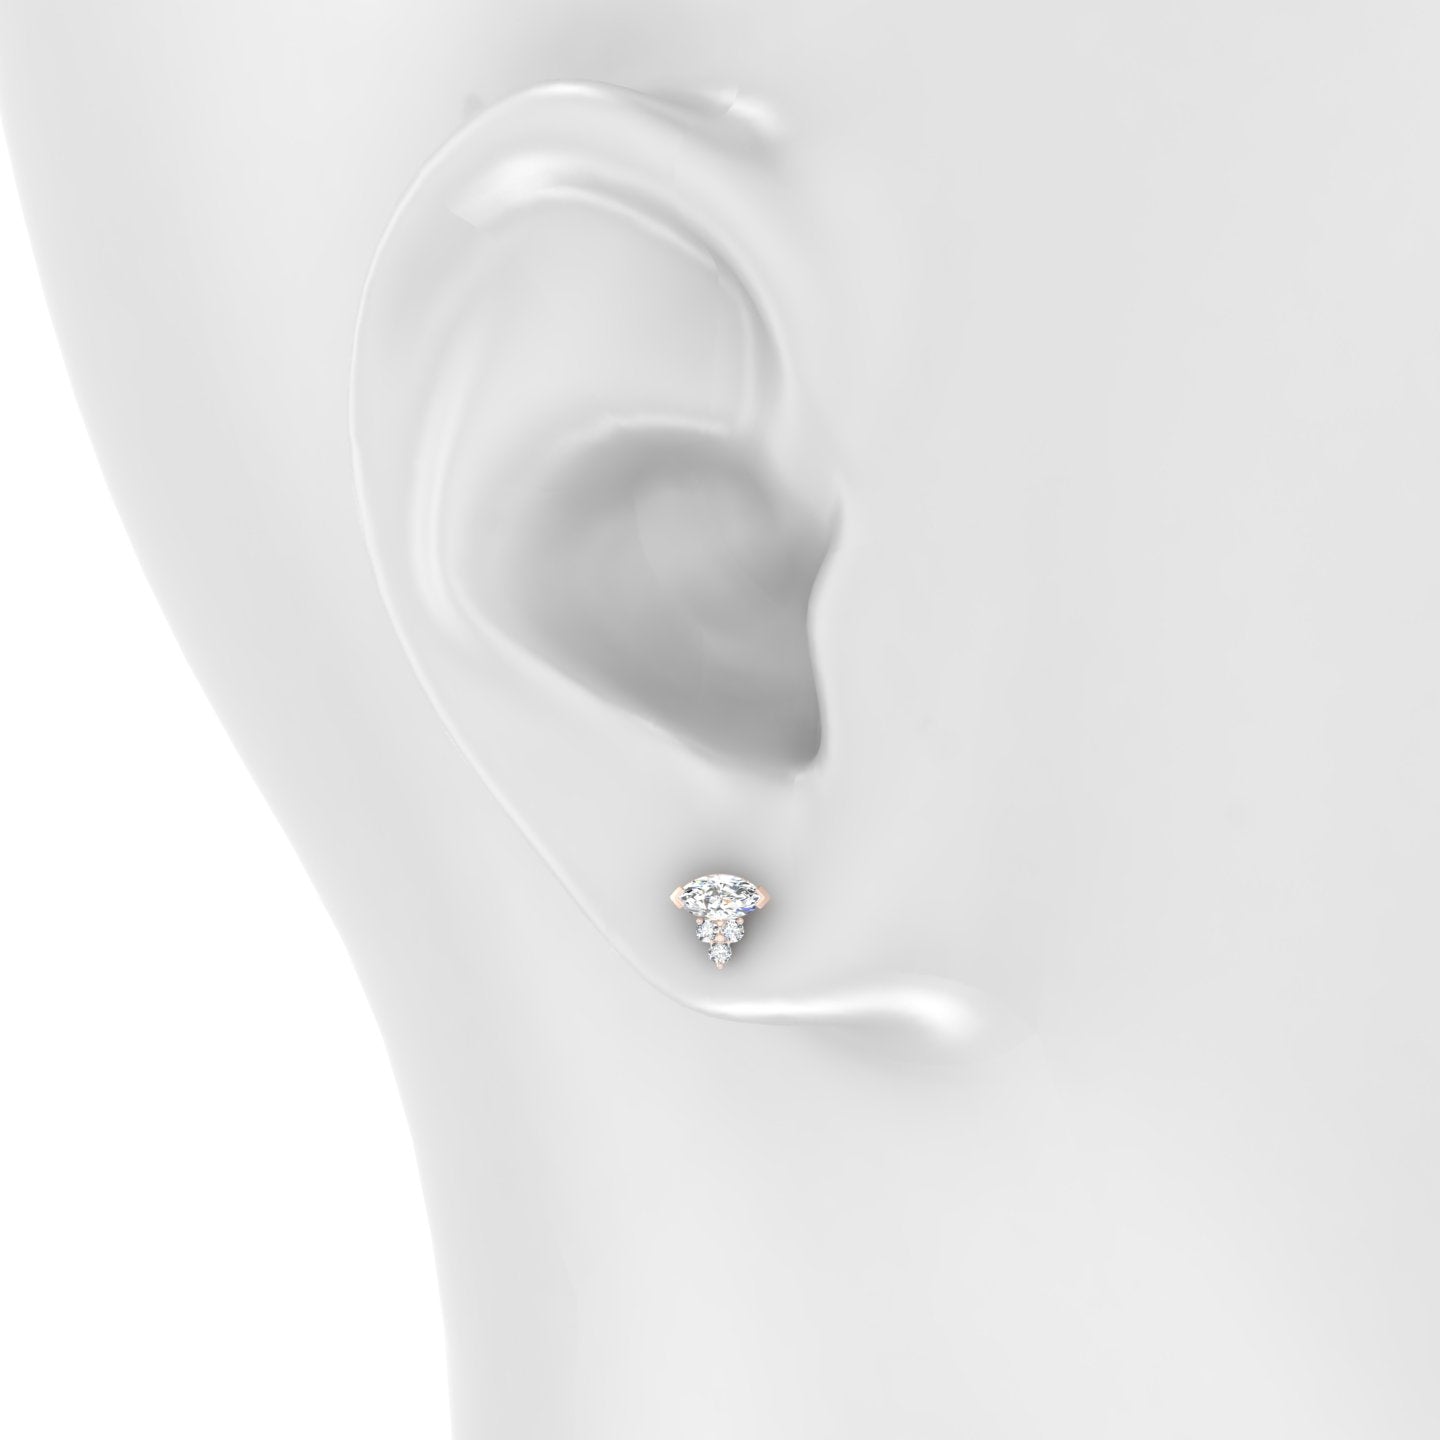 Oya | 18k Rose Gold 7 mm Diamond Earring